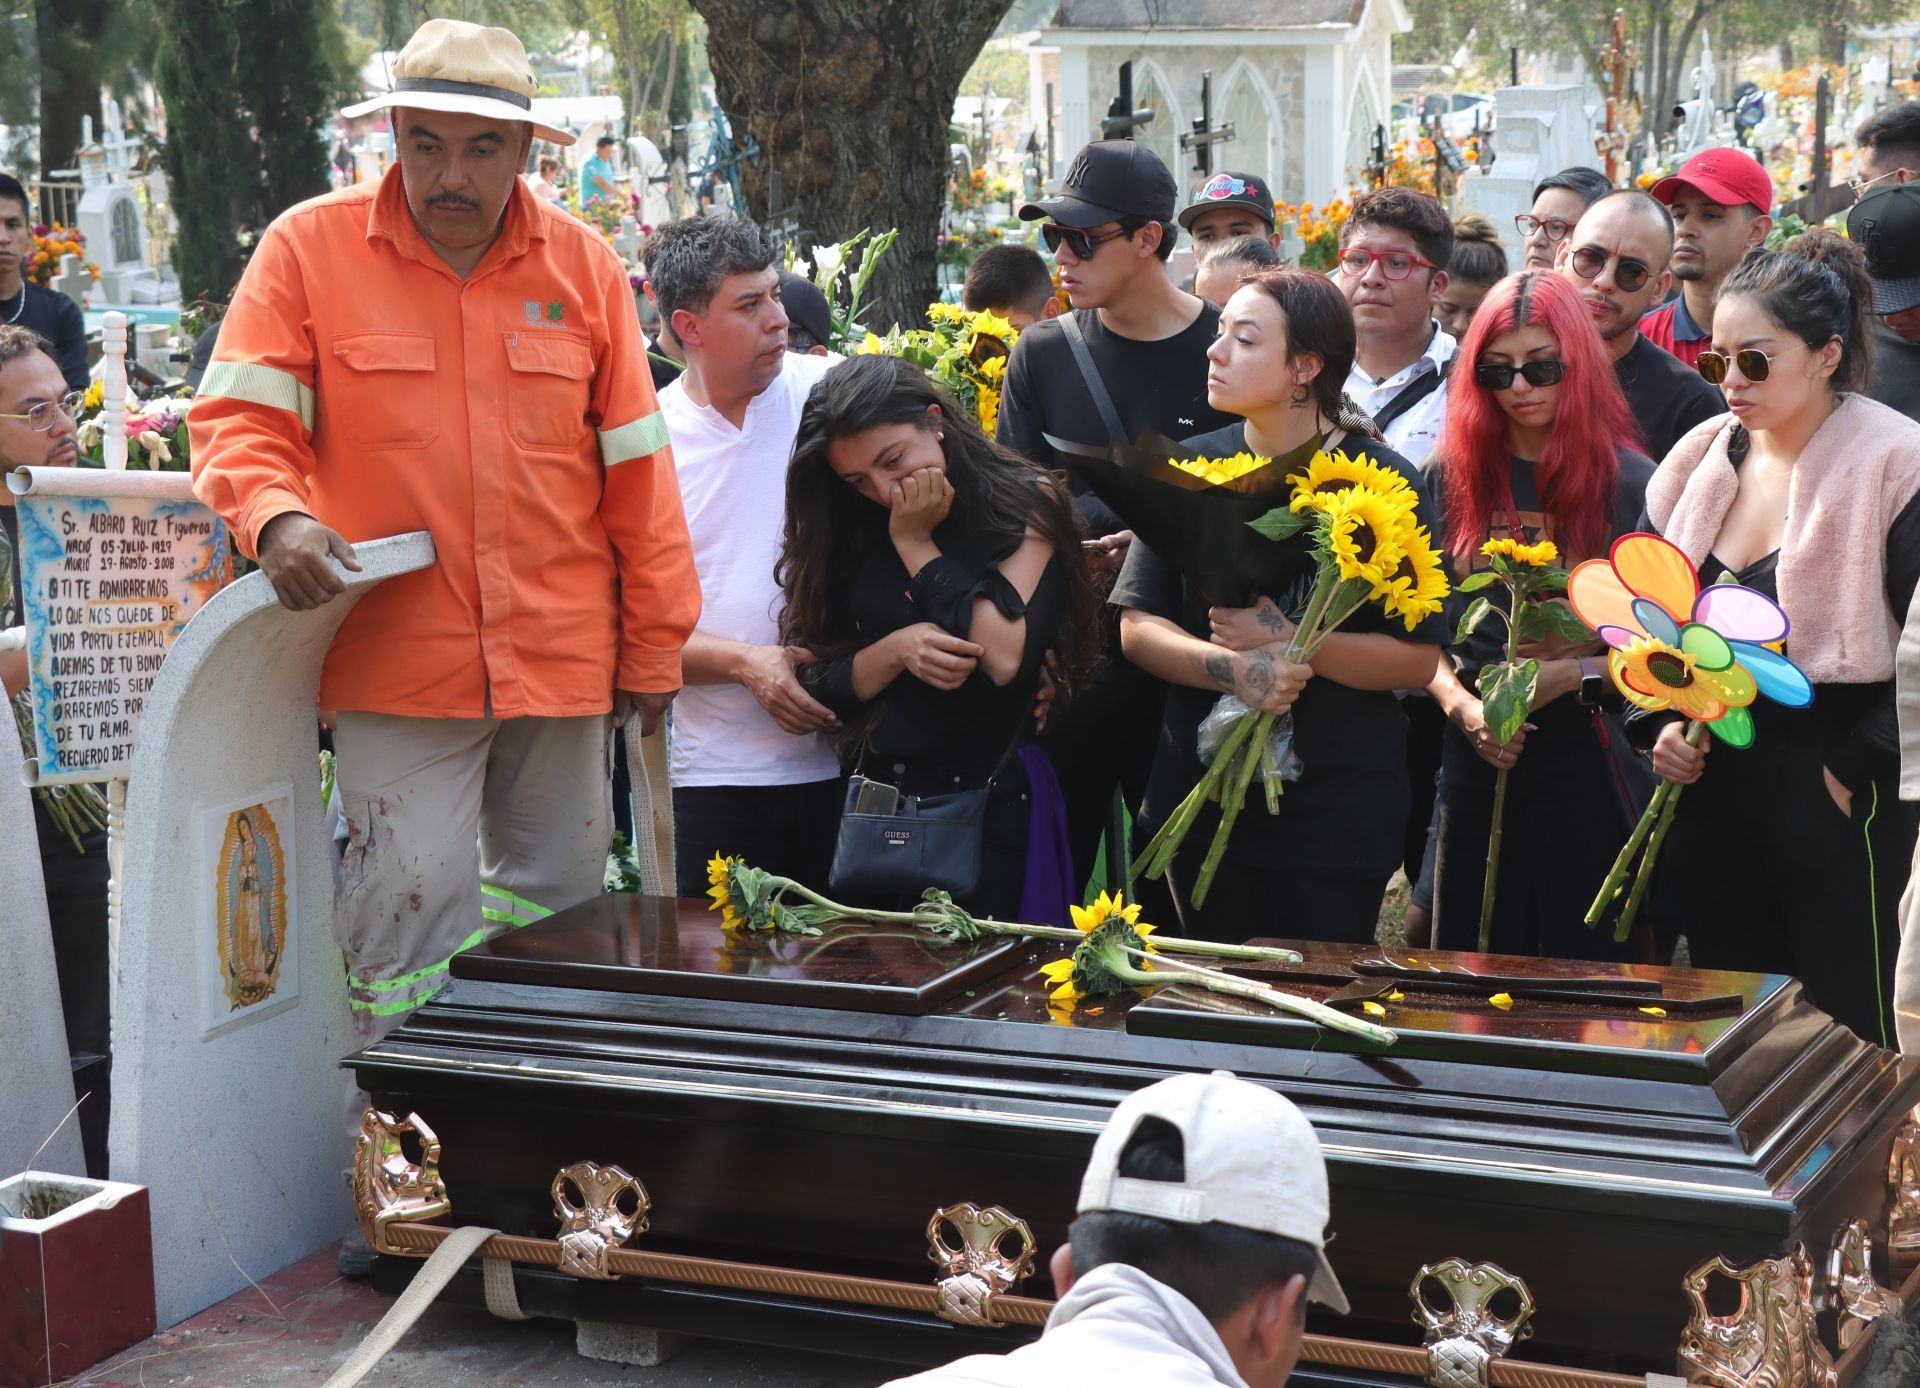 El entierro de de la joven Ariadna Fernanda en el panteón civil de San Nicolás Tolentino, en Iztapalapa, el pasado 5 de noviembre (FOTO: ROGELIO MORALES/CUARTOSCURO.COM)